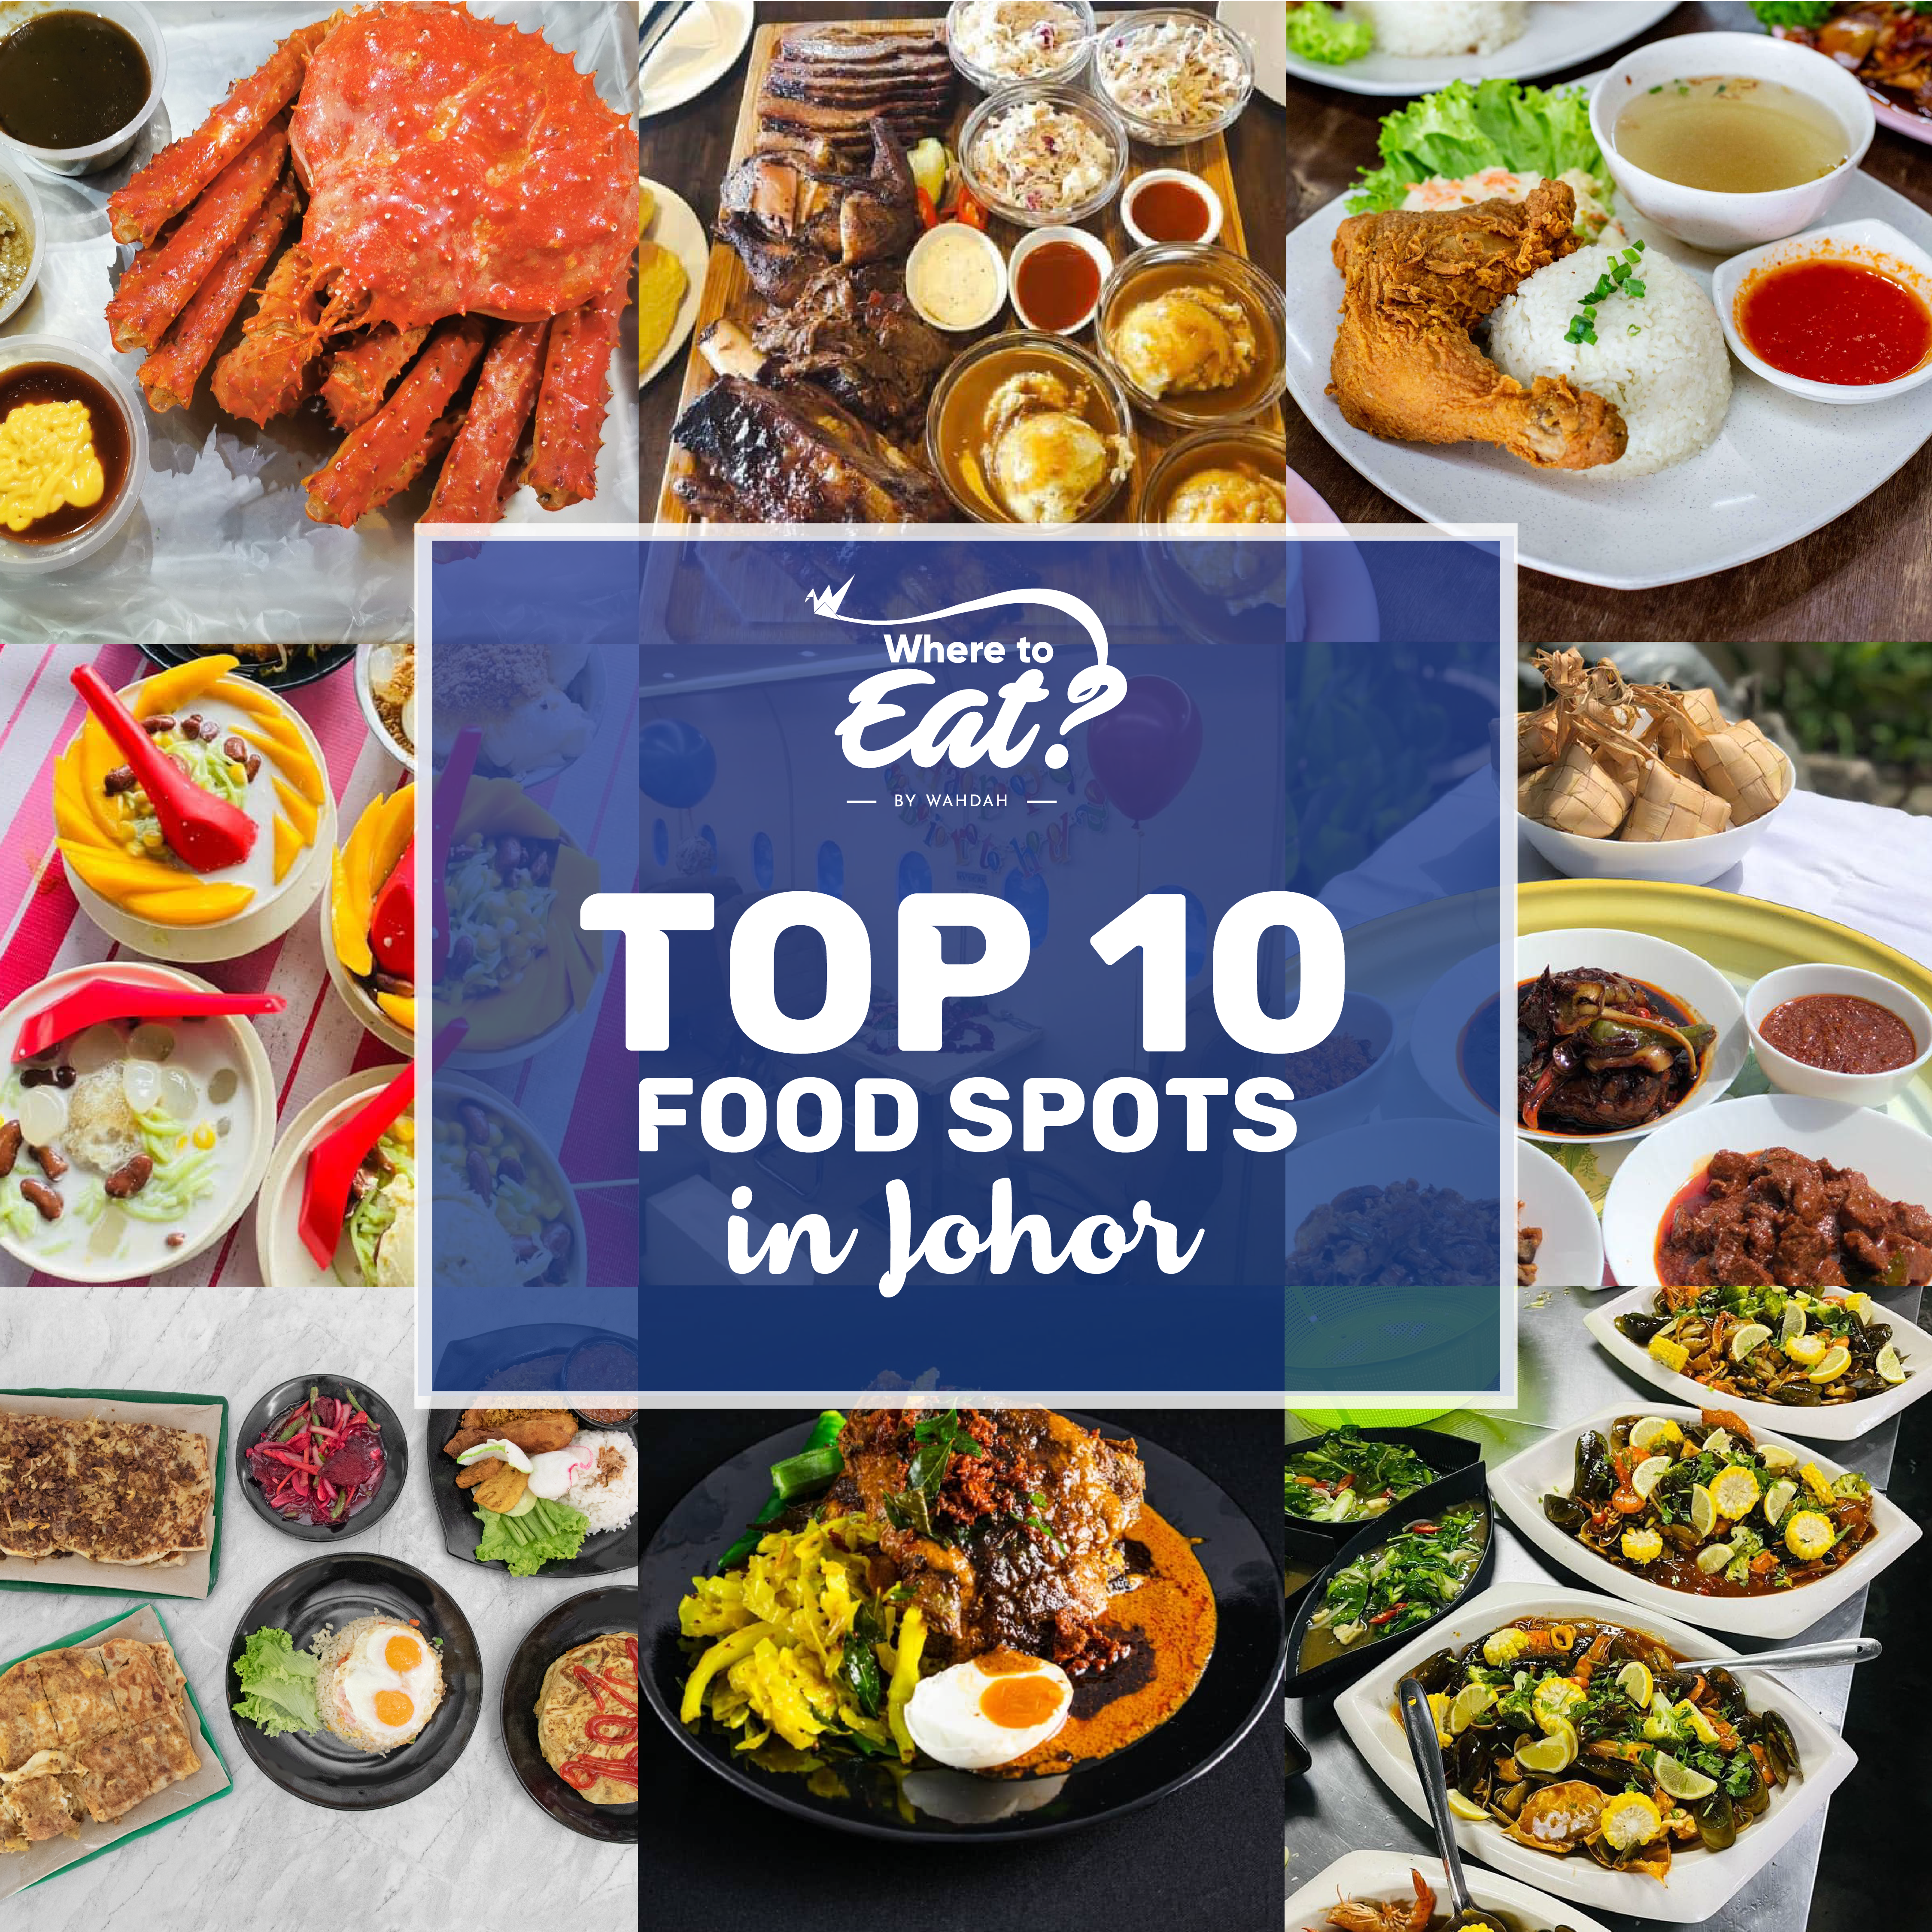 Top 10 Food Spots in Johor